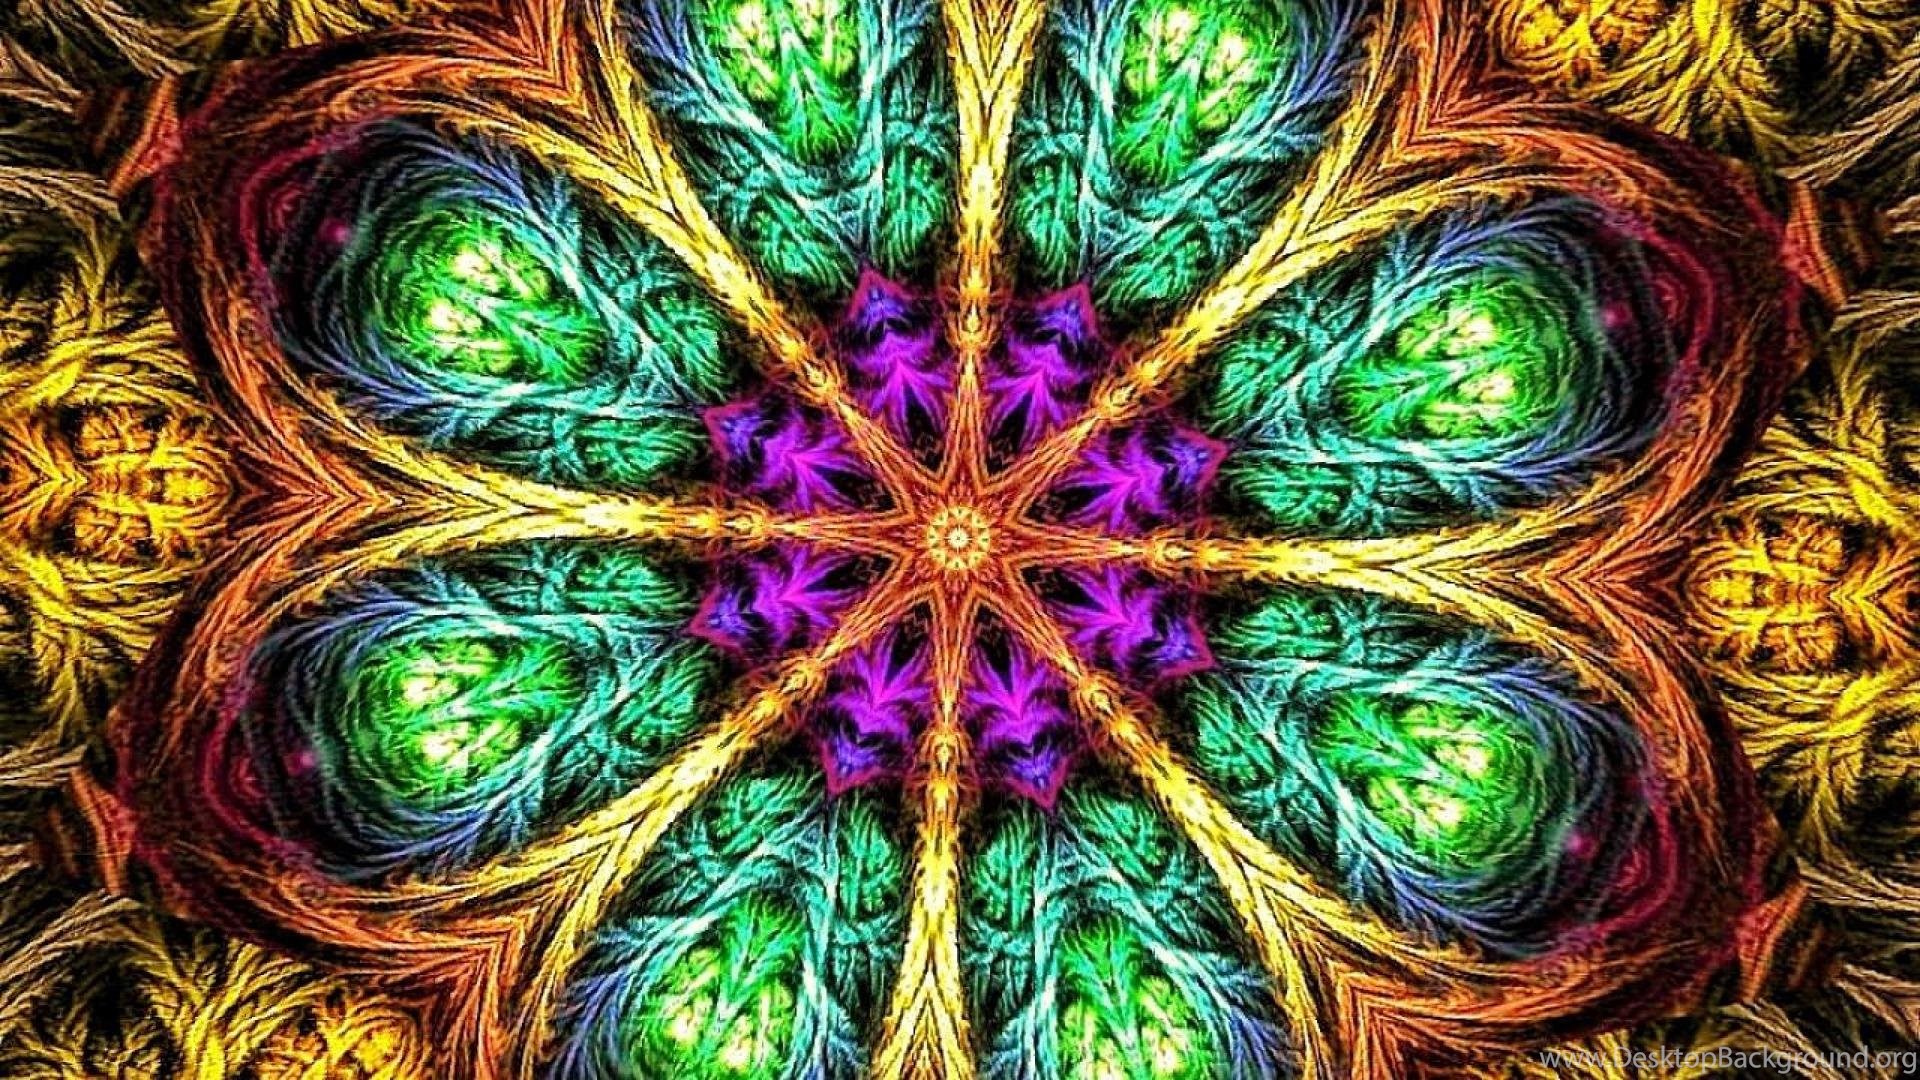 mandala wallpaper hd,psychedelic art,fractal art,green,pattern,symmetry